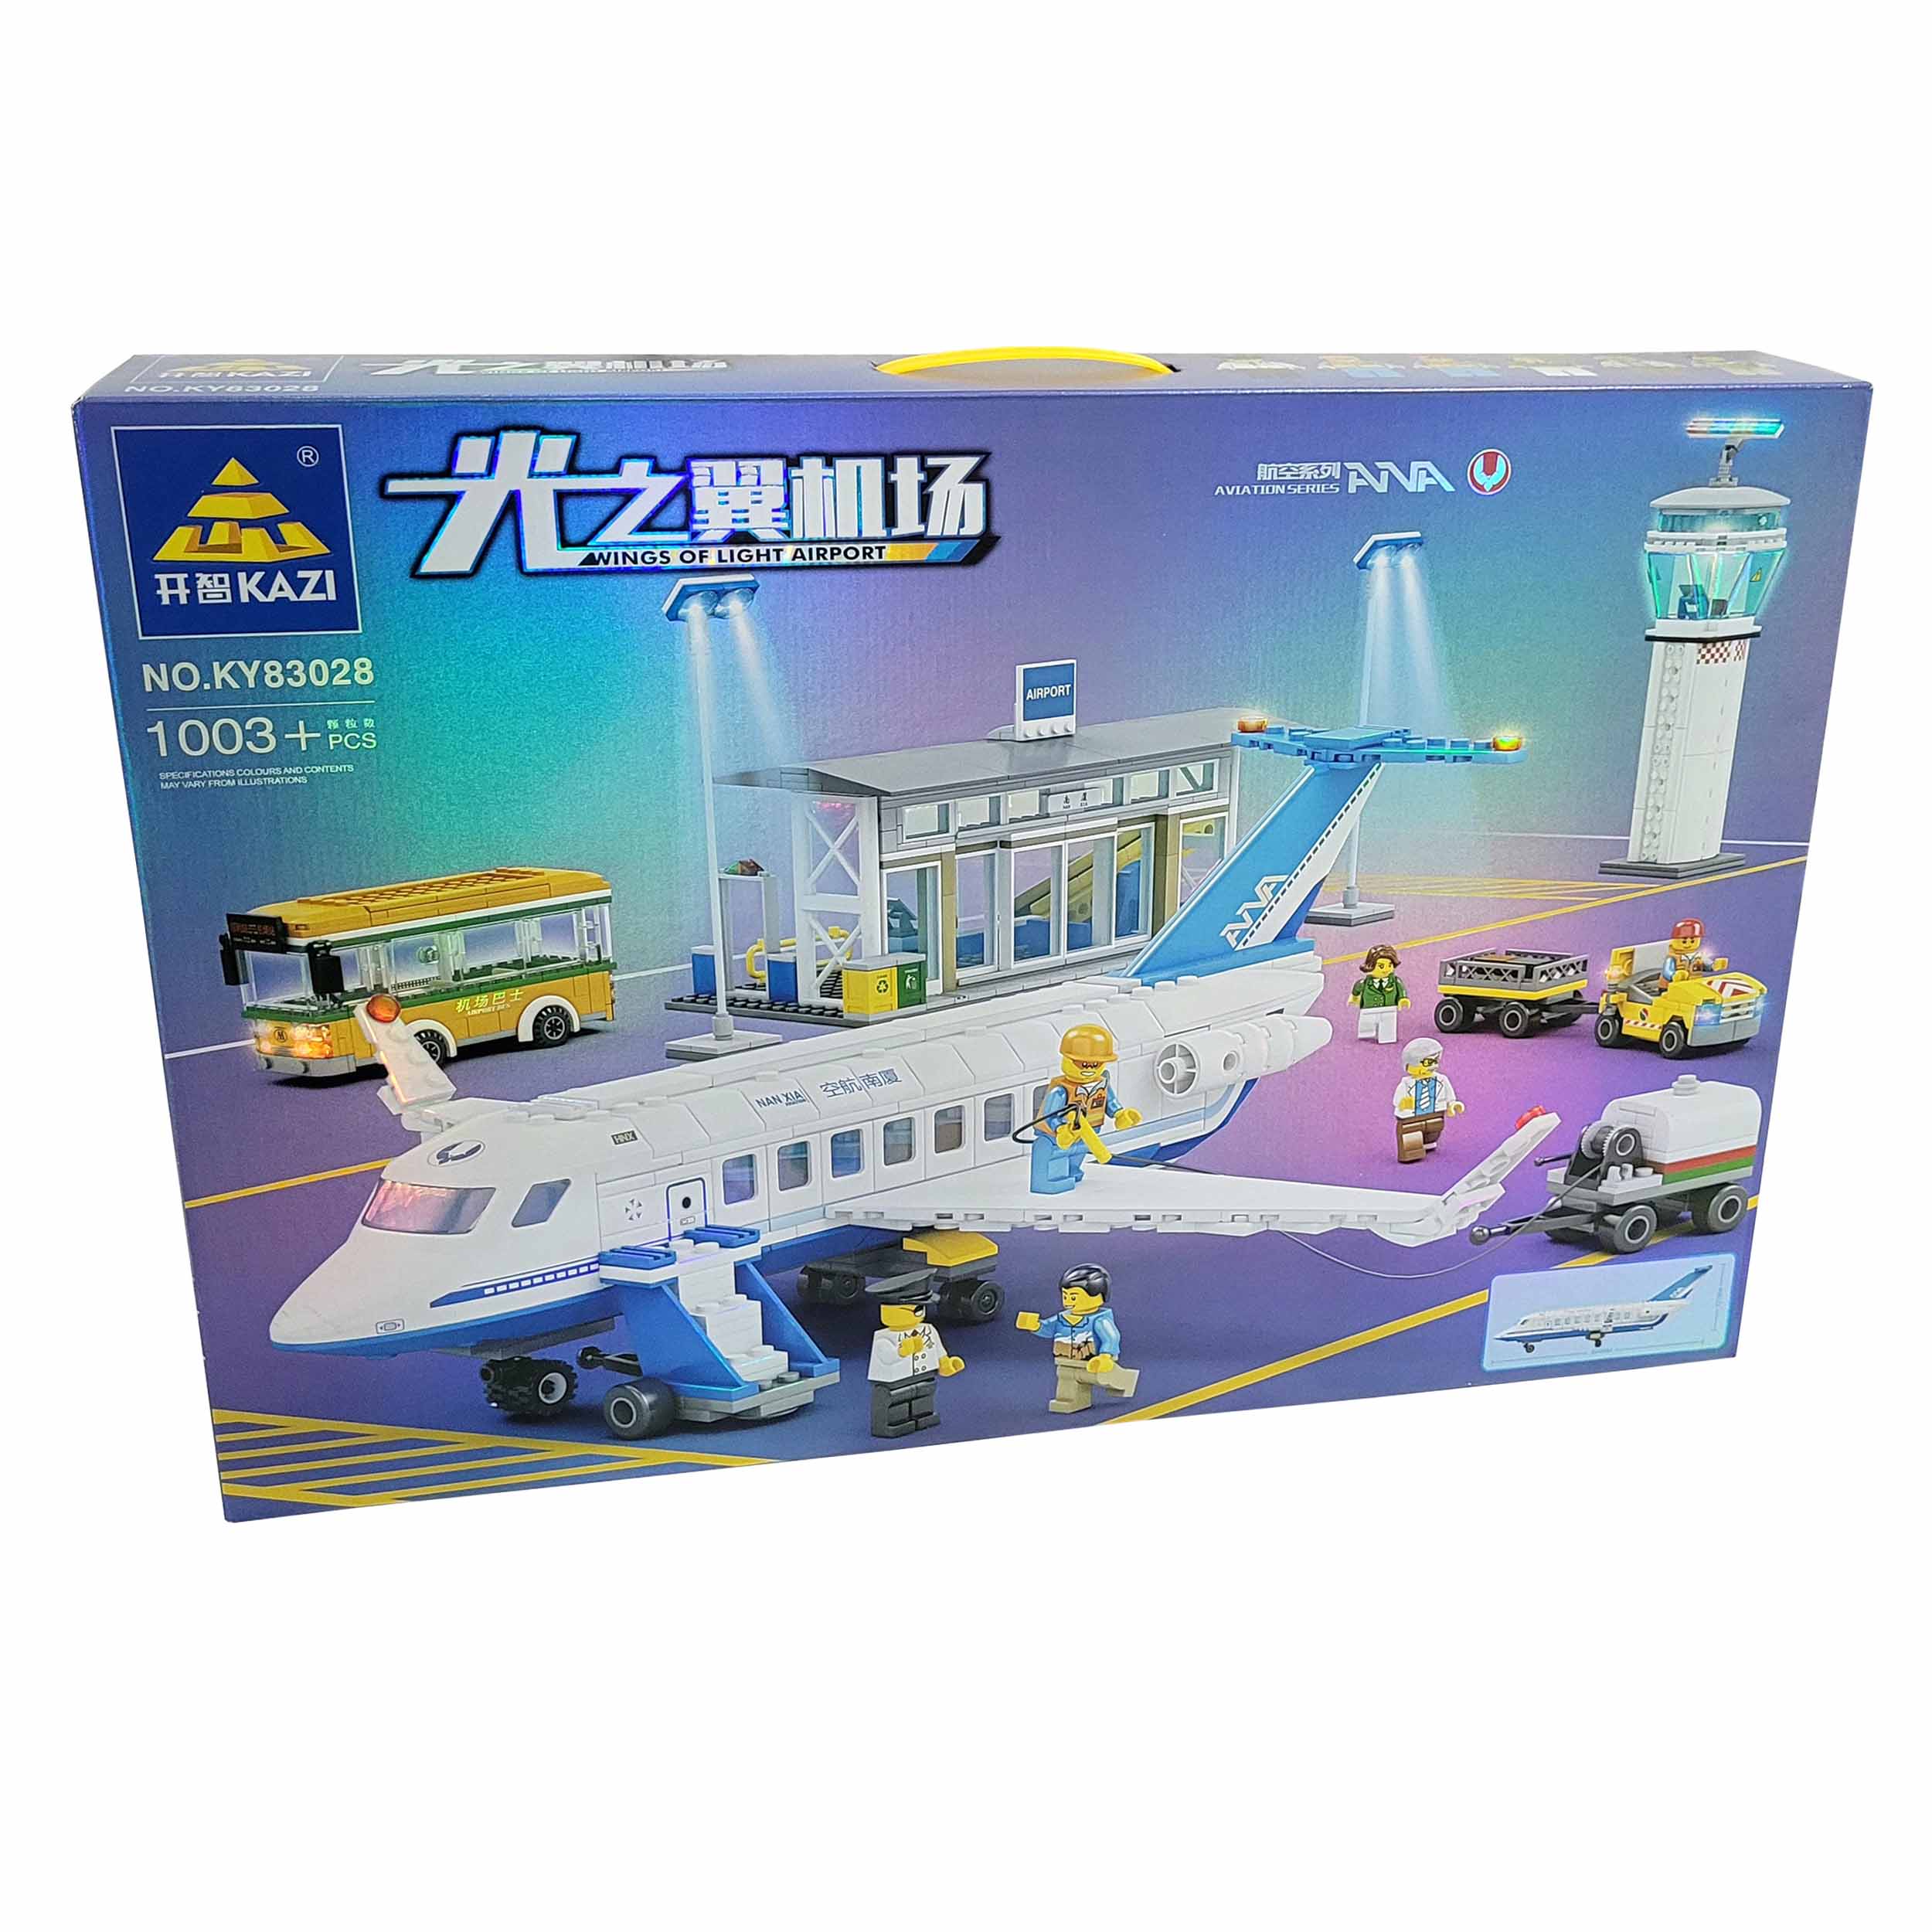 نکته خرید - قیمت روز ساختنی طرح هواپیما مسافربری مدل فرودگاه و برج مراقبت کد KY83028 خرید